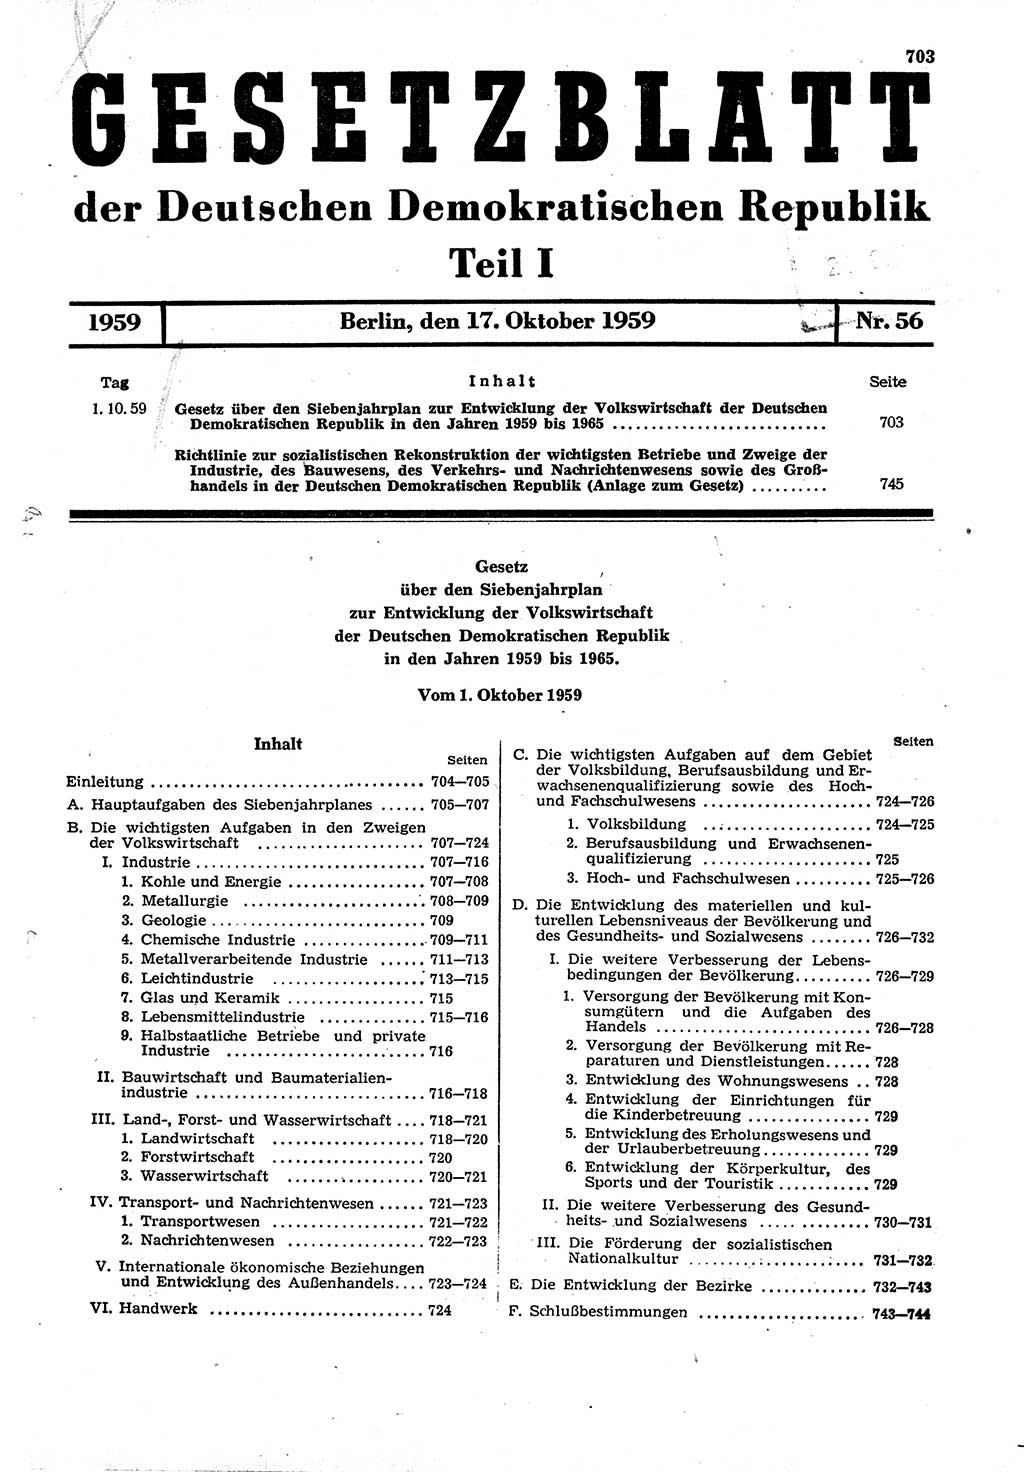 Gesetzblatt (GBl.) der Deutschen Demokratischen Republik (DDR) Teil Ⅰ 1959, Seite 703 (GBl. DDR Ⅰ 1959, S. 703)